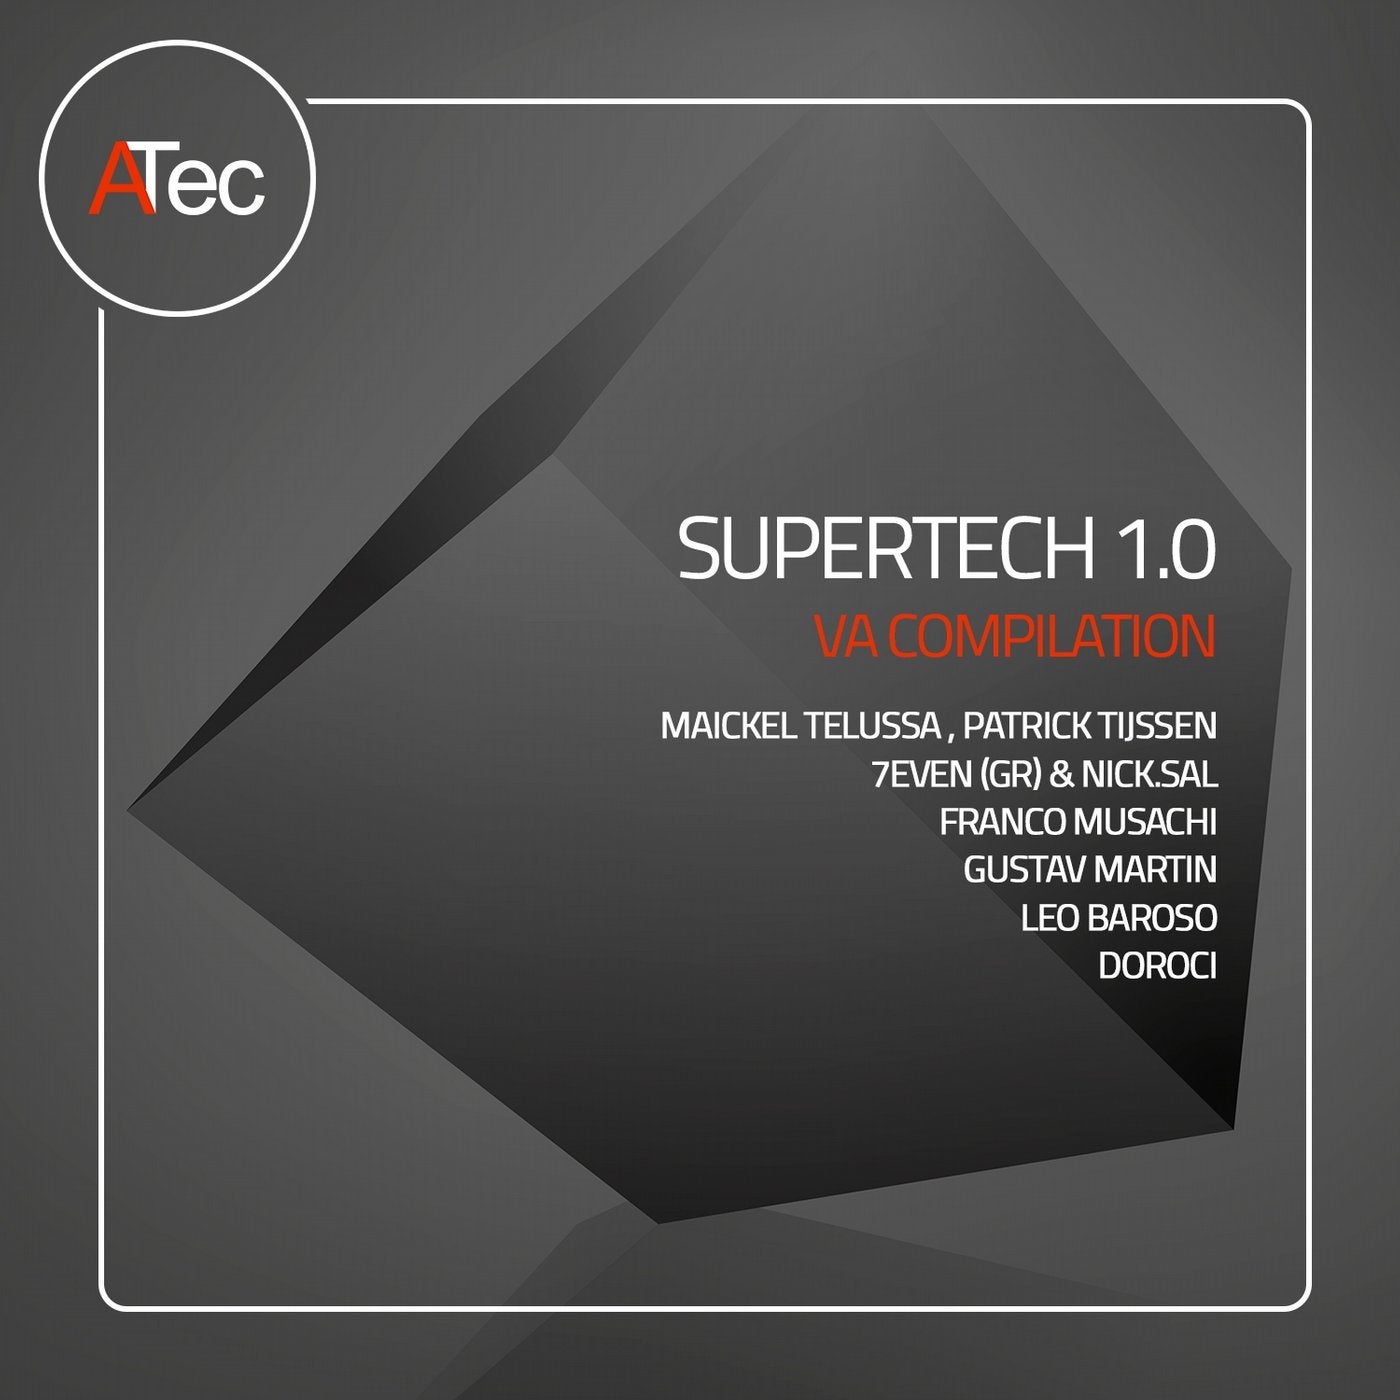 Supertech 1.0